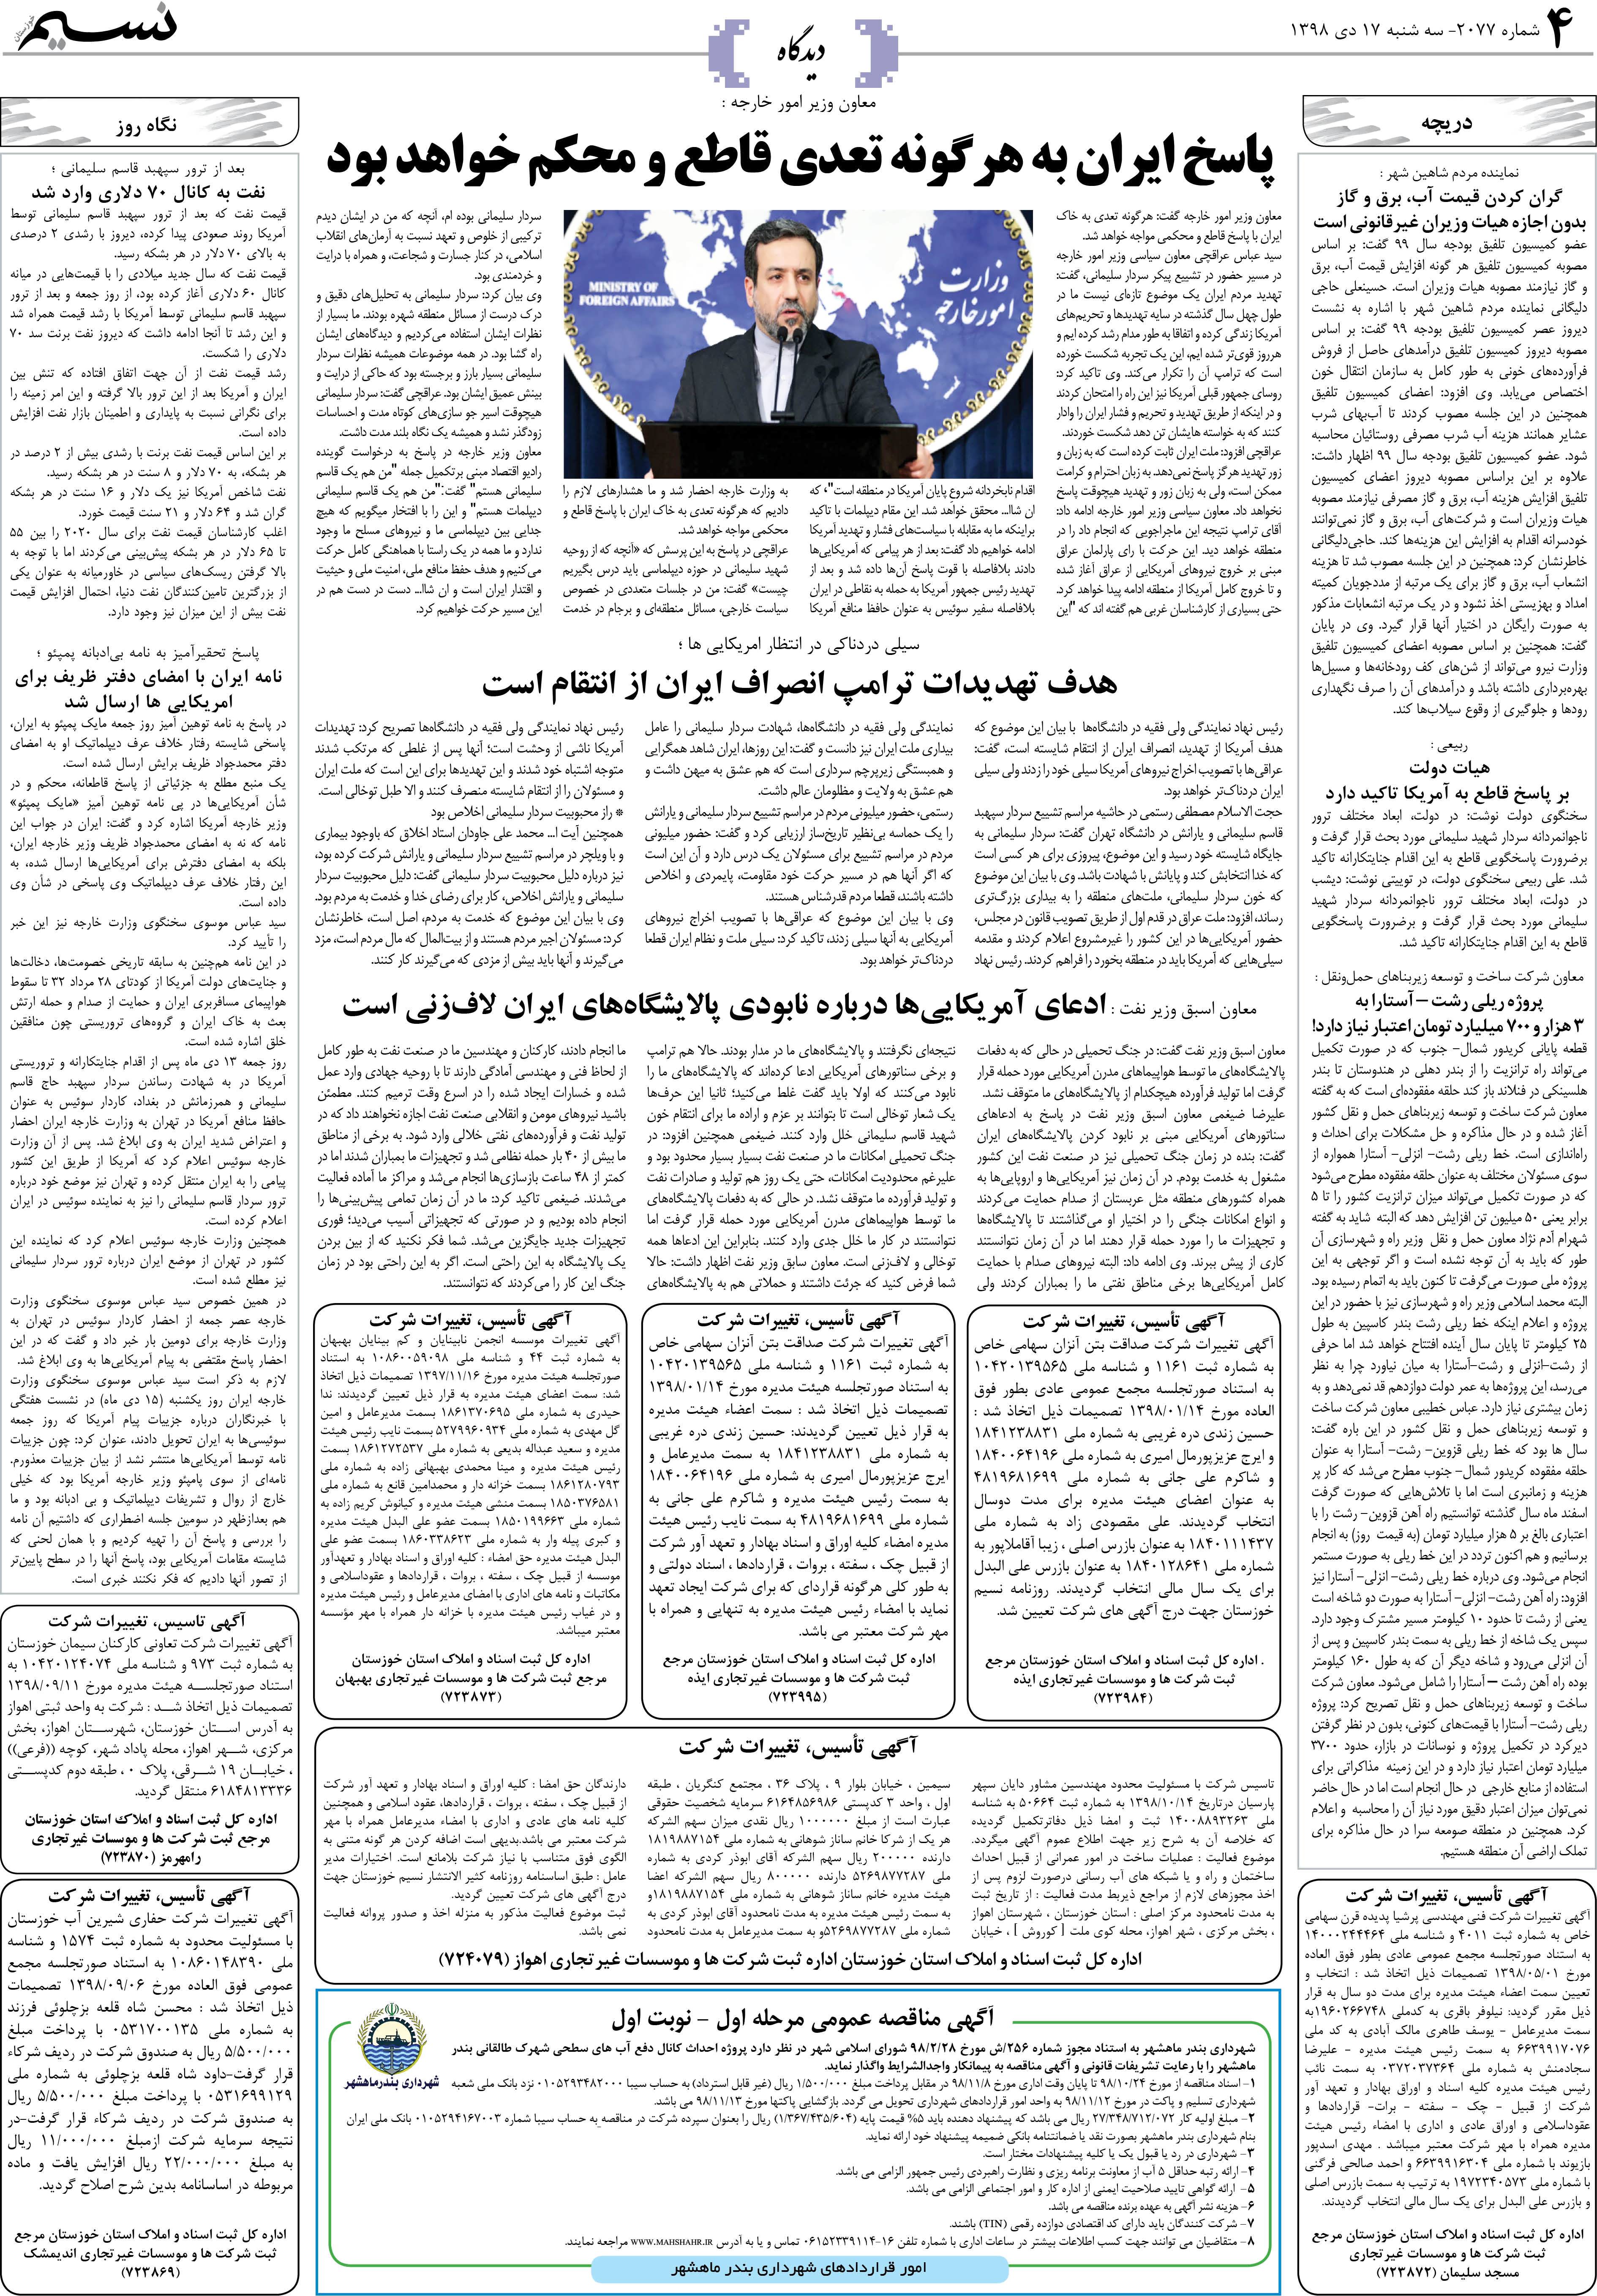 صفحه دیدگاه روزنامه نسیم شماره 2077